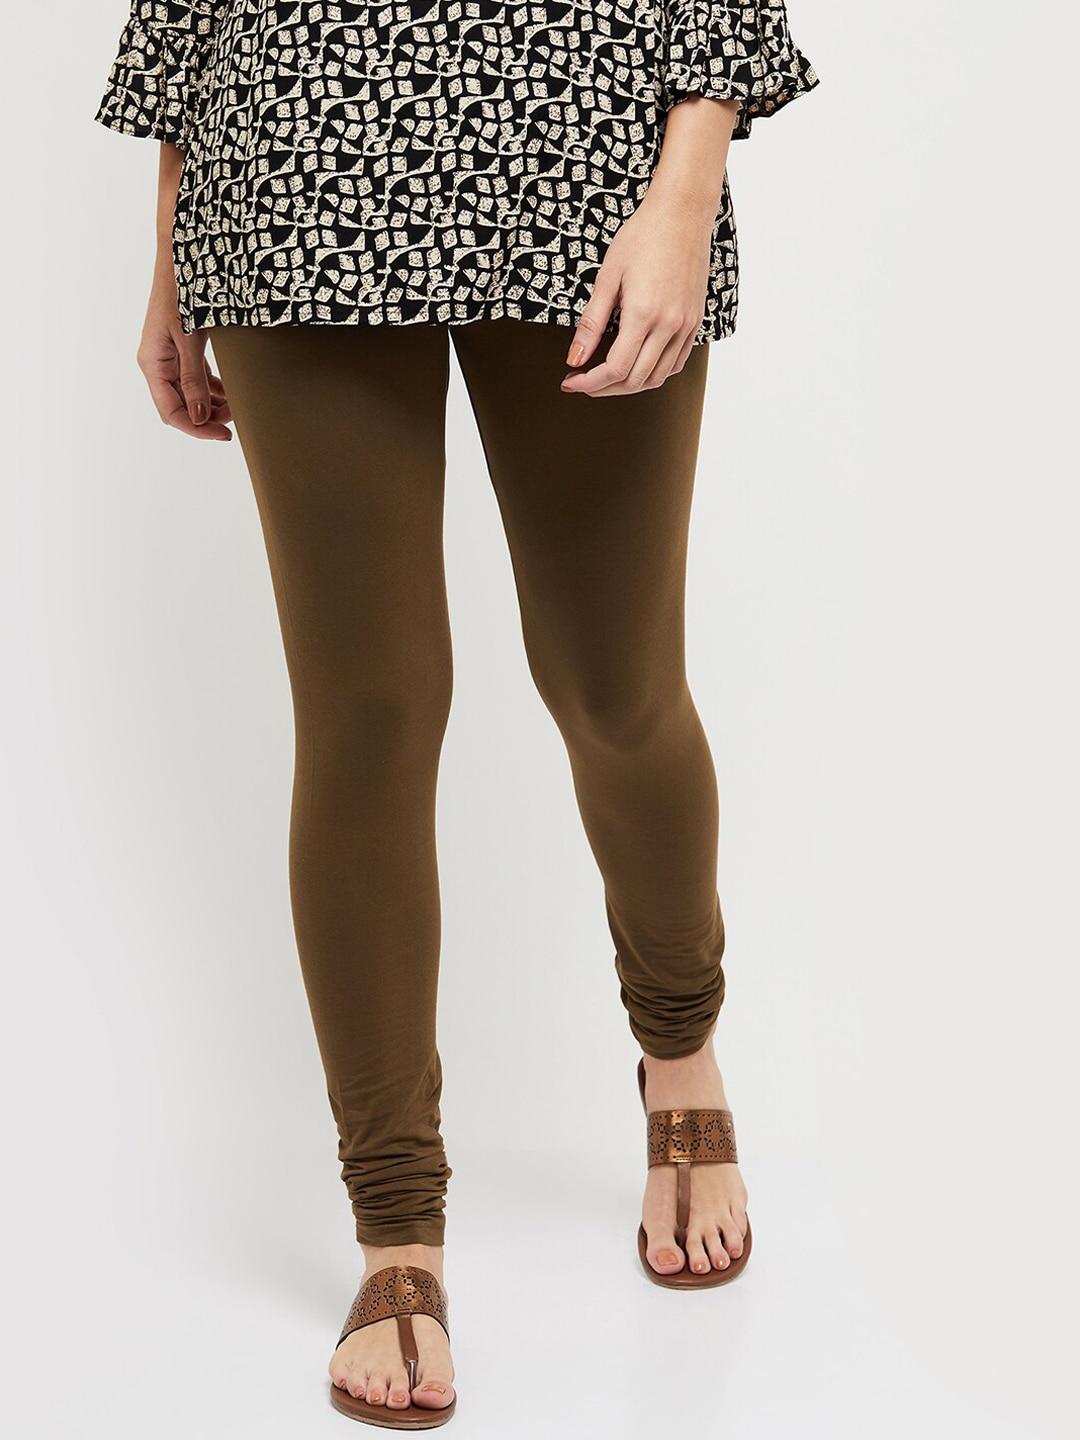 max-women-brown-solid-churidar-length-leggings